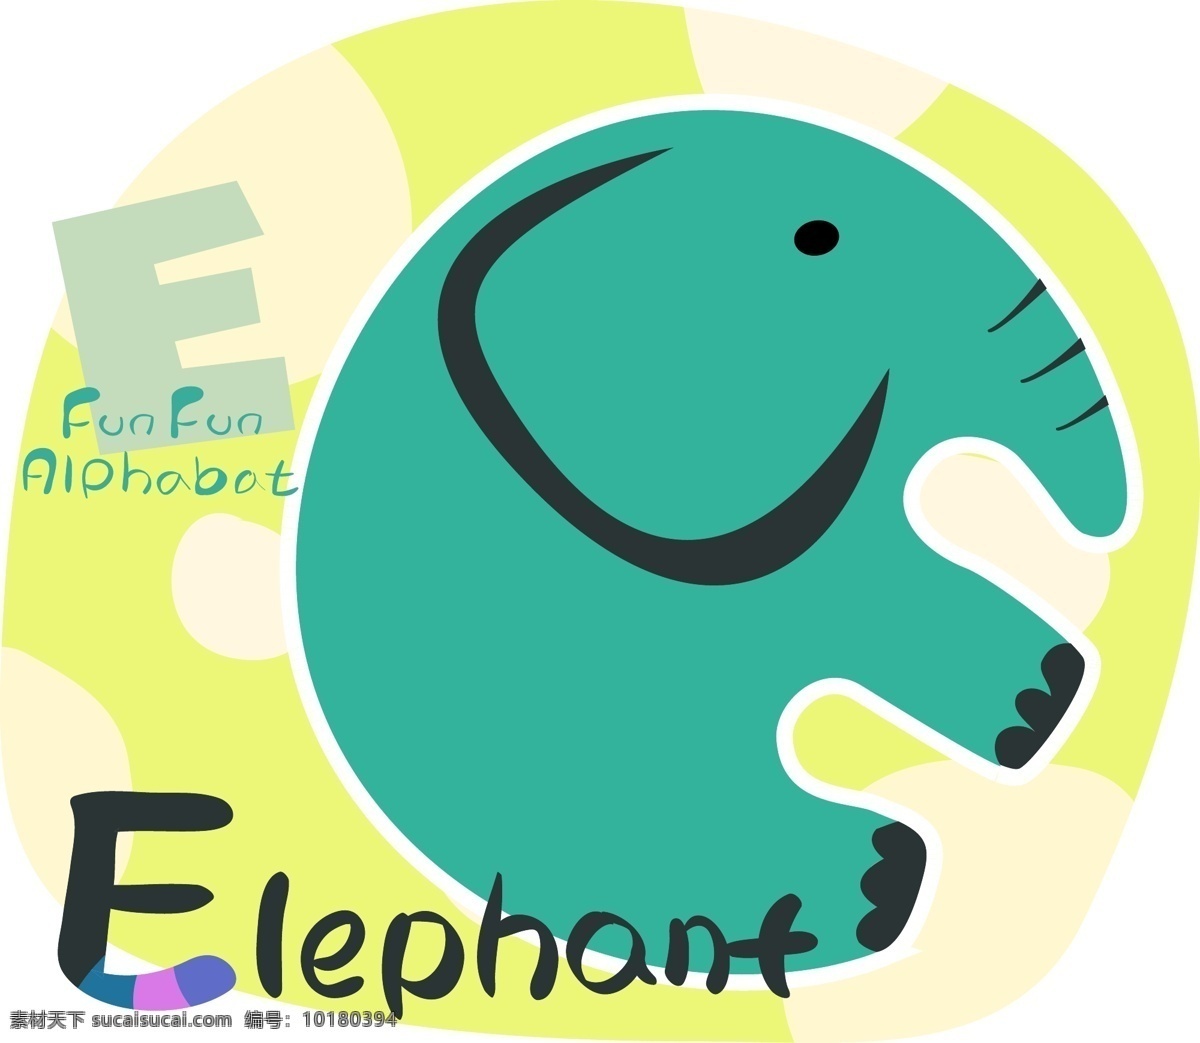 卡通 抽象 大象 花纹 背景 矢量大象 抽象大象